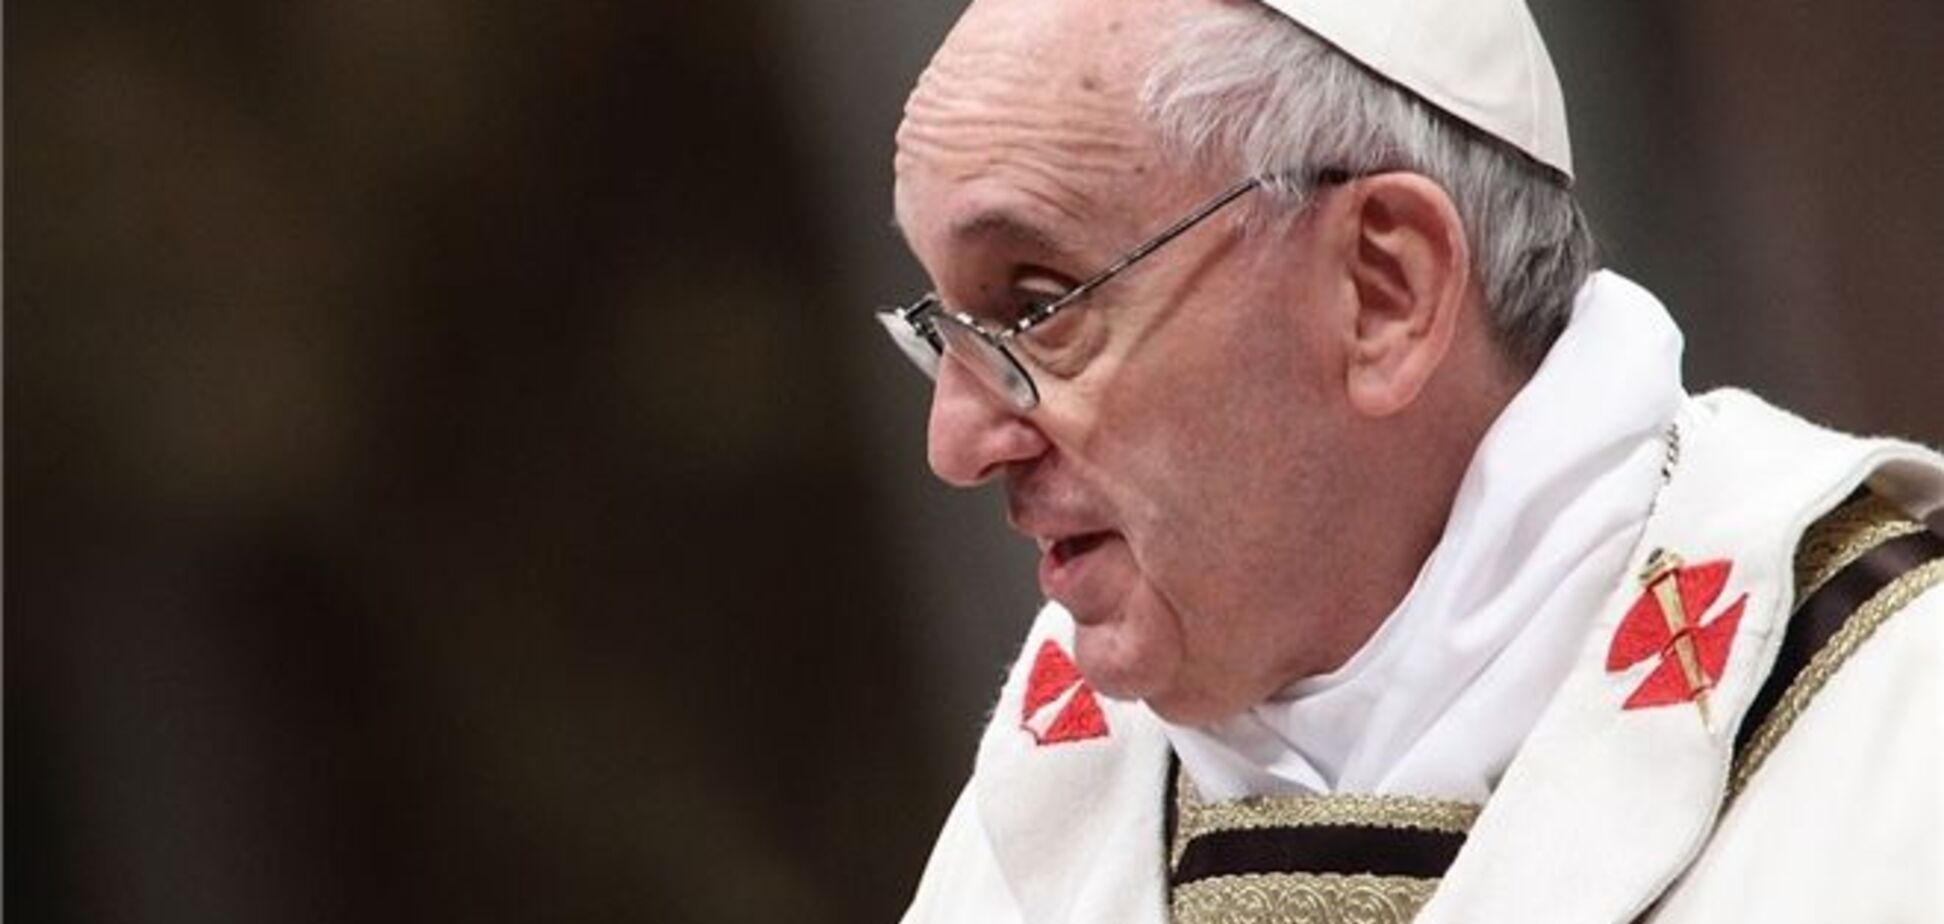 Папа Римский готовит реформу Католической церкви - Ватикан